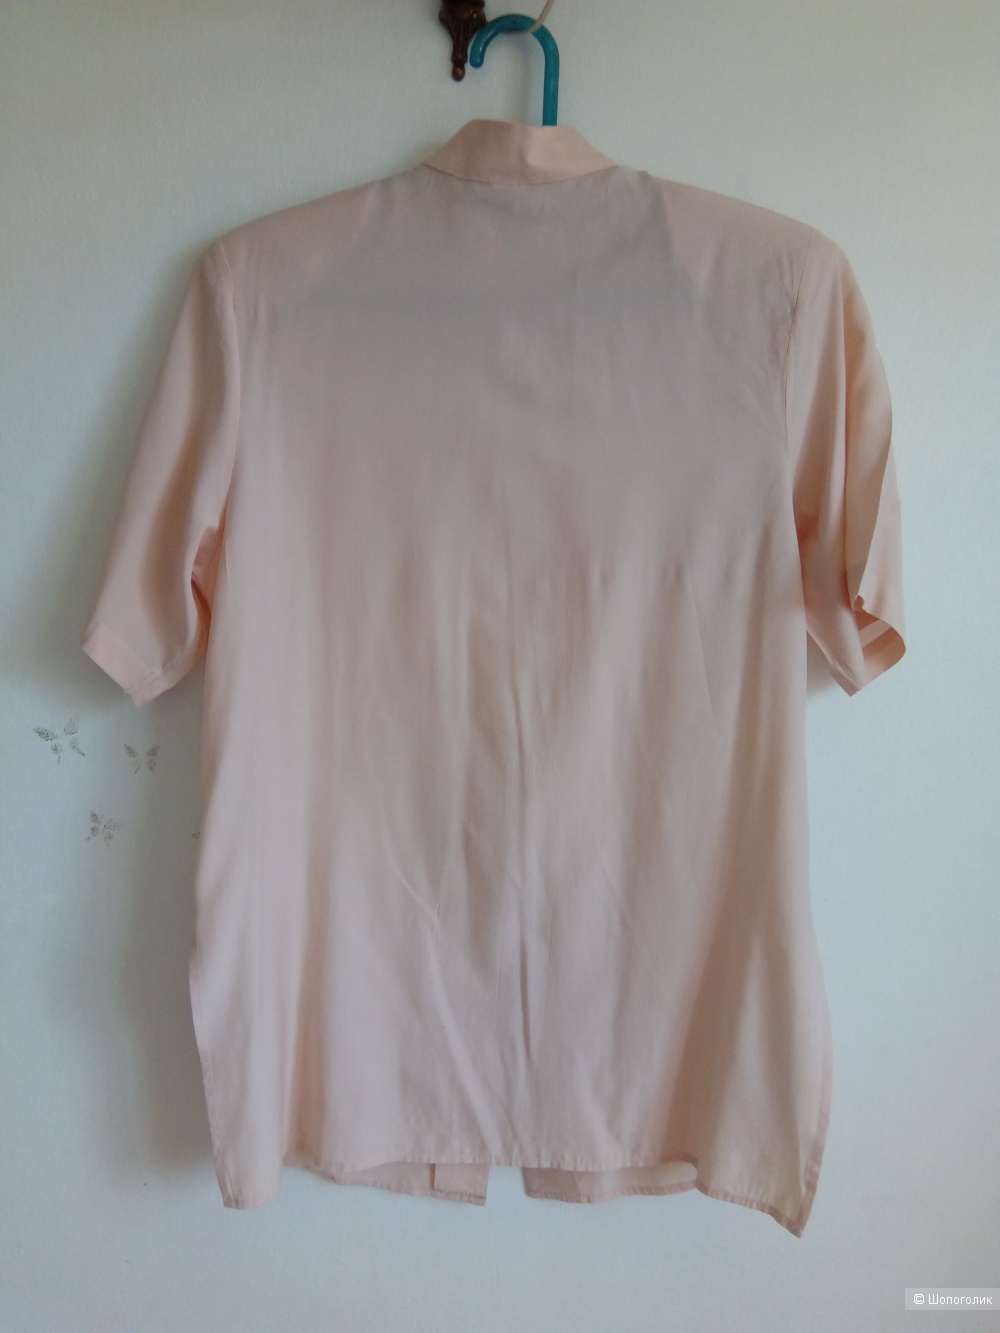 Женская блузка - рубашка , MAC Fash, 40 евро, 46-48 Россия